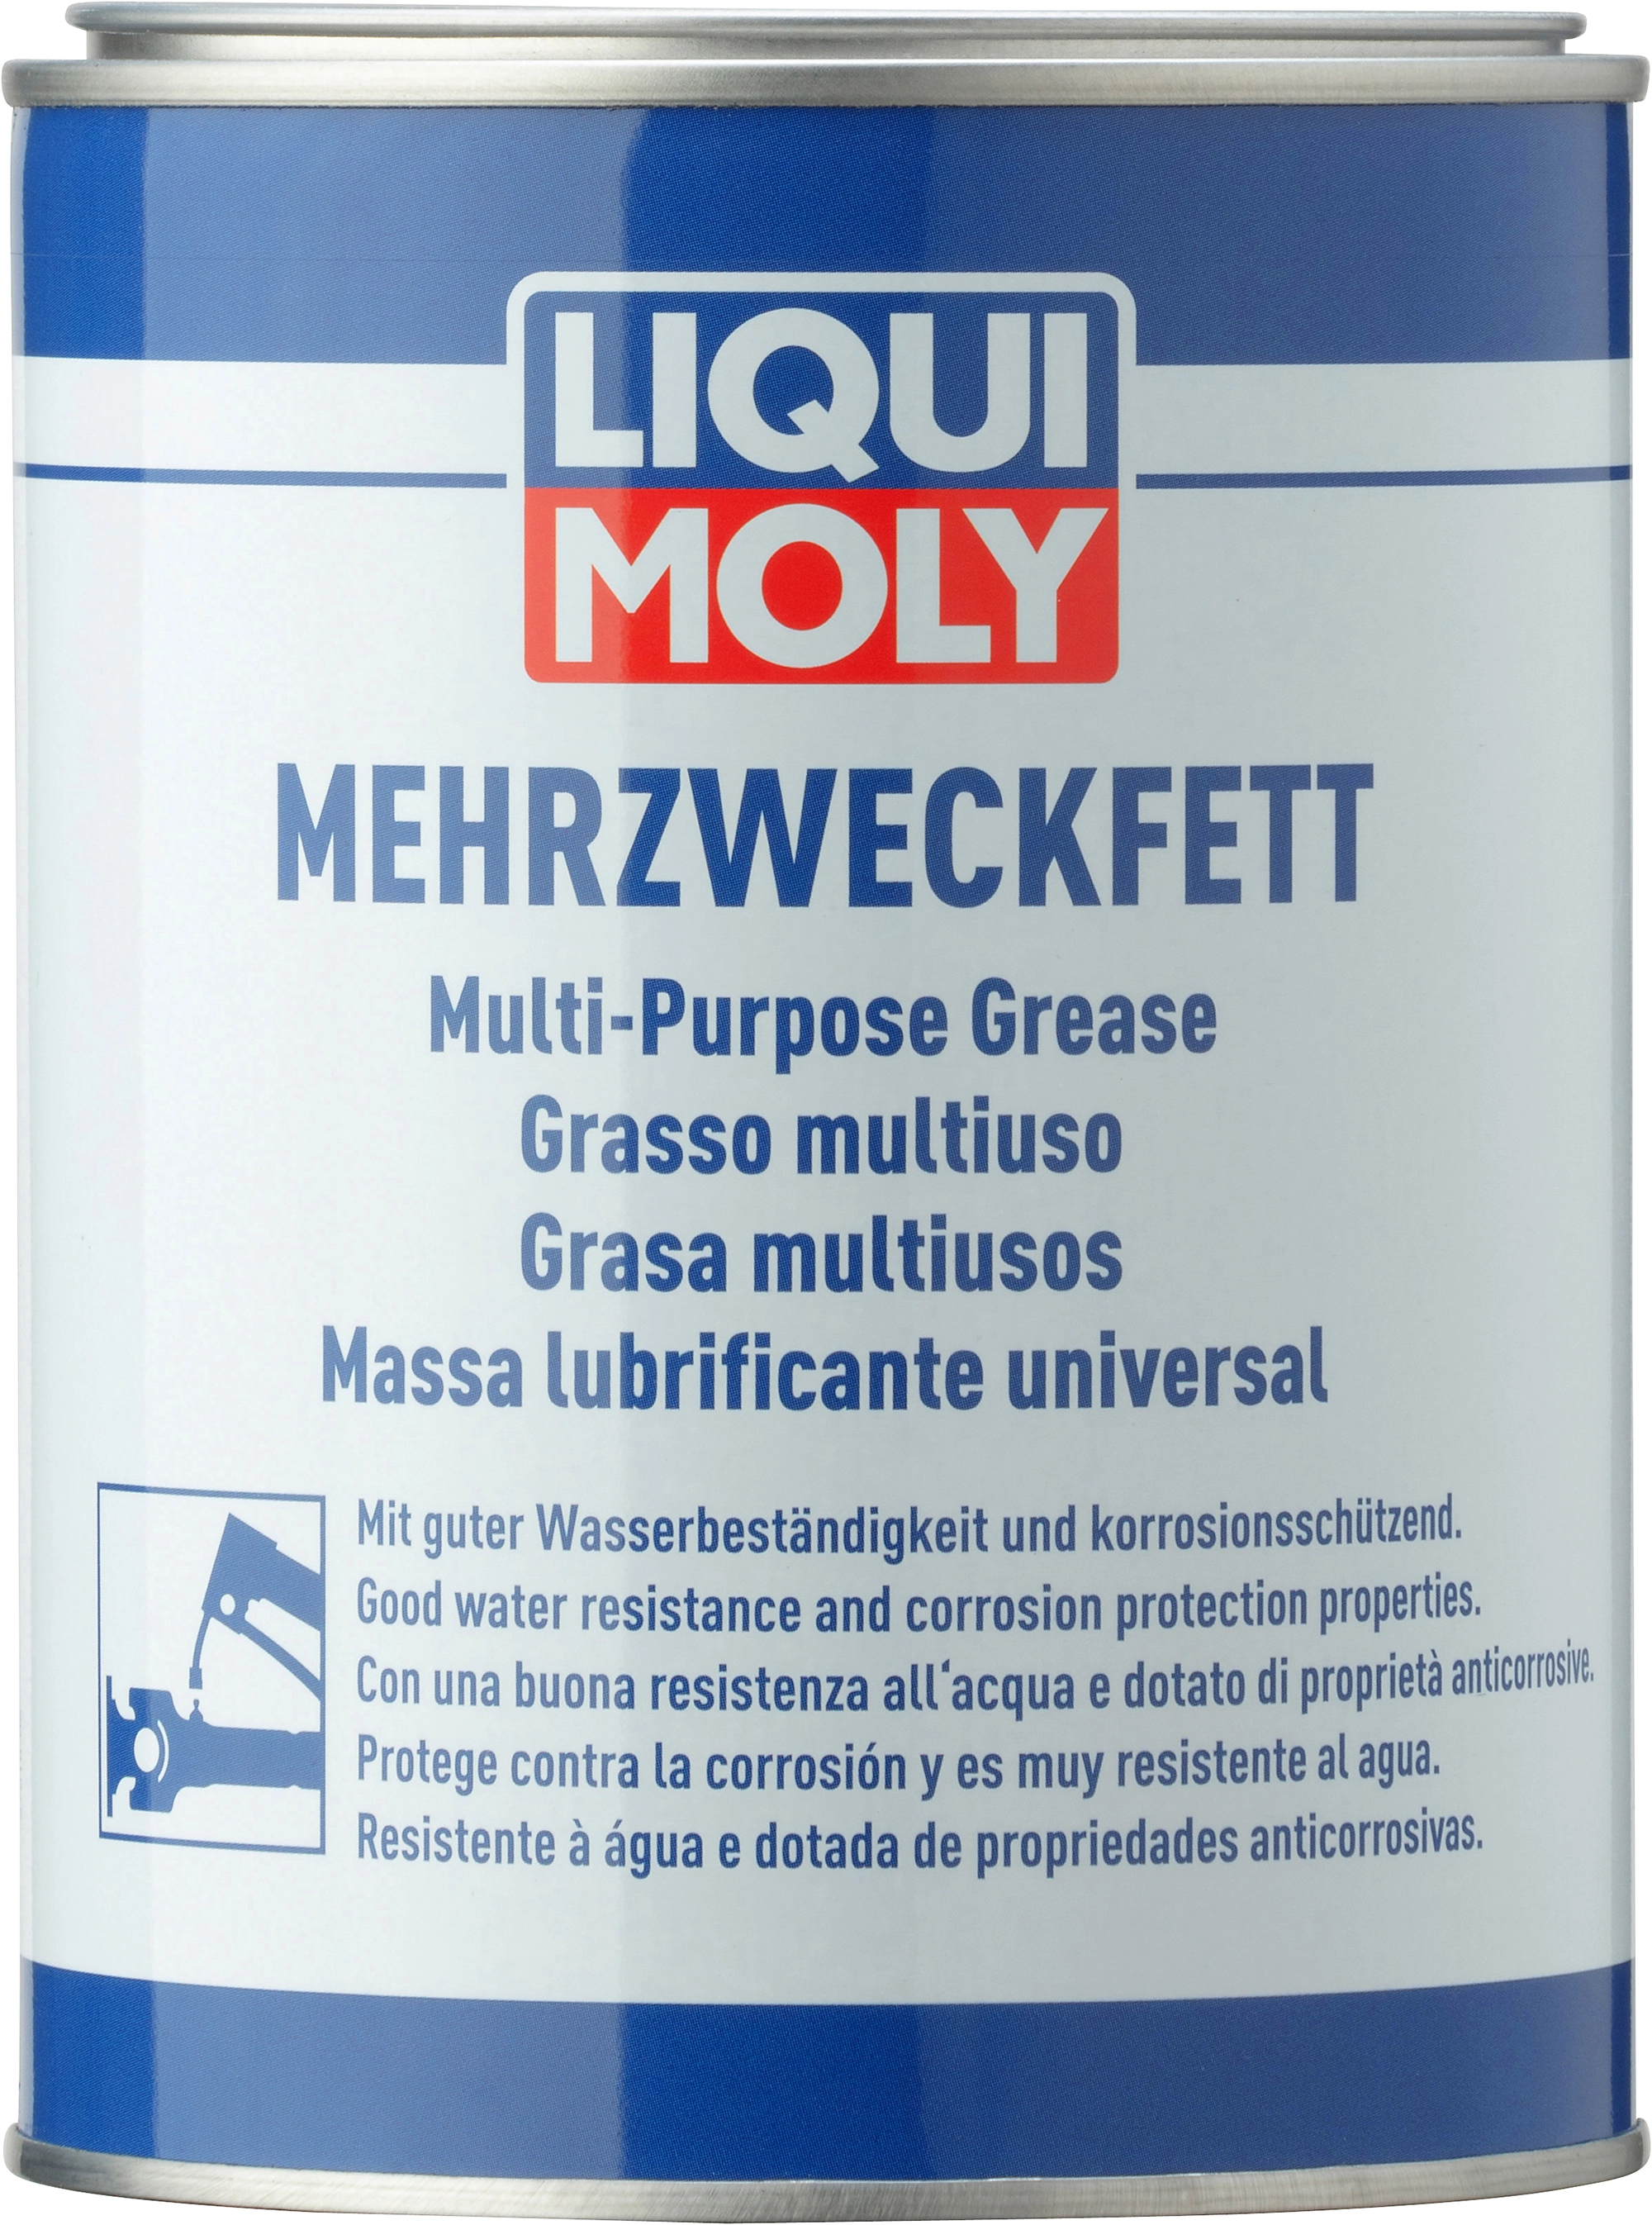 Liqui Moly Mehrzweckfett 400 g kaufen bei OBI